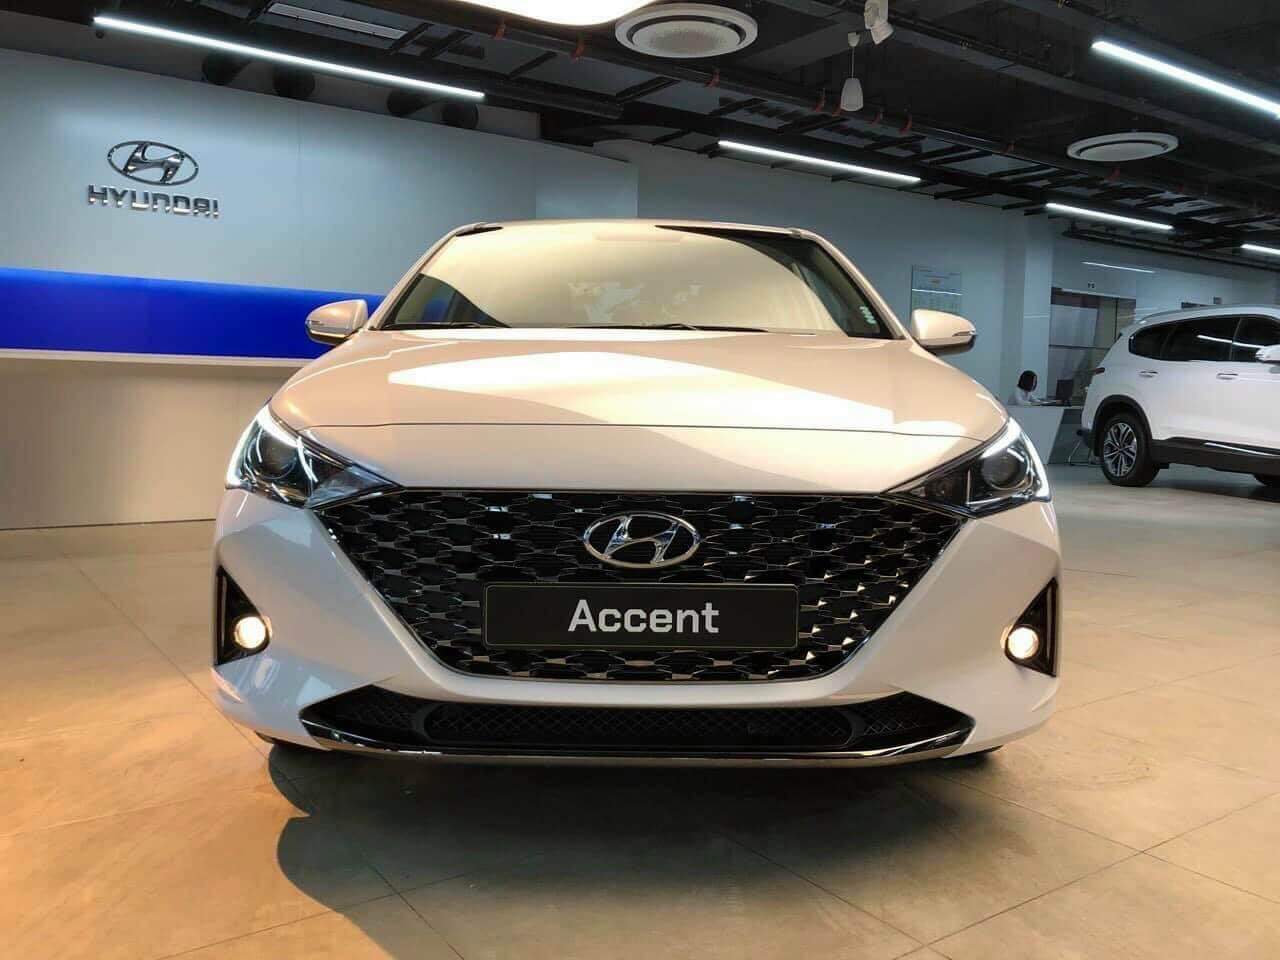 Hyundai Accent 2020 cũ lướt chất lượng giá bán 042023